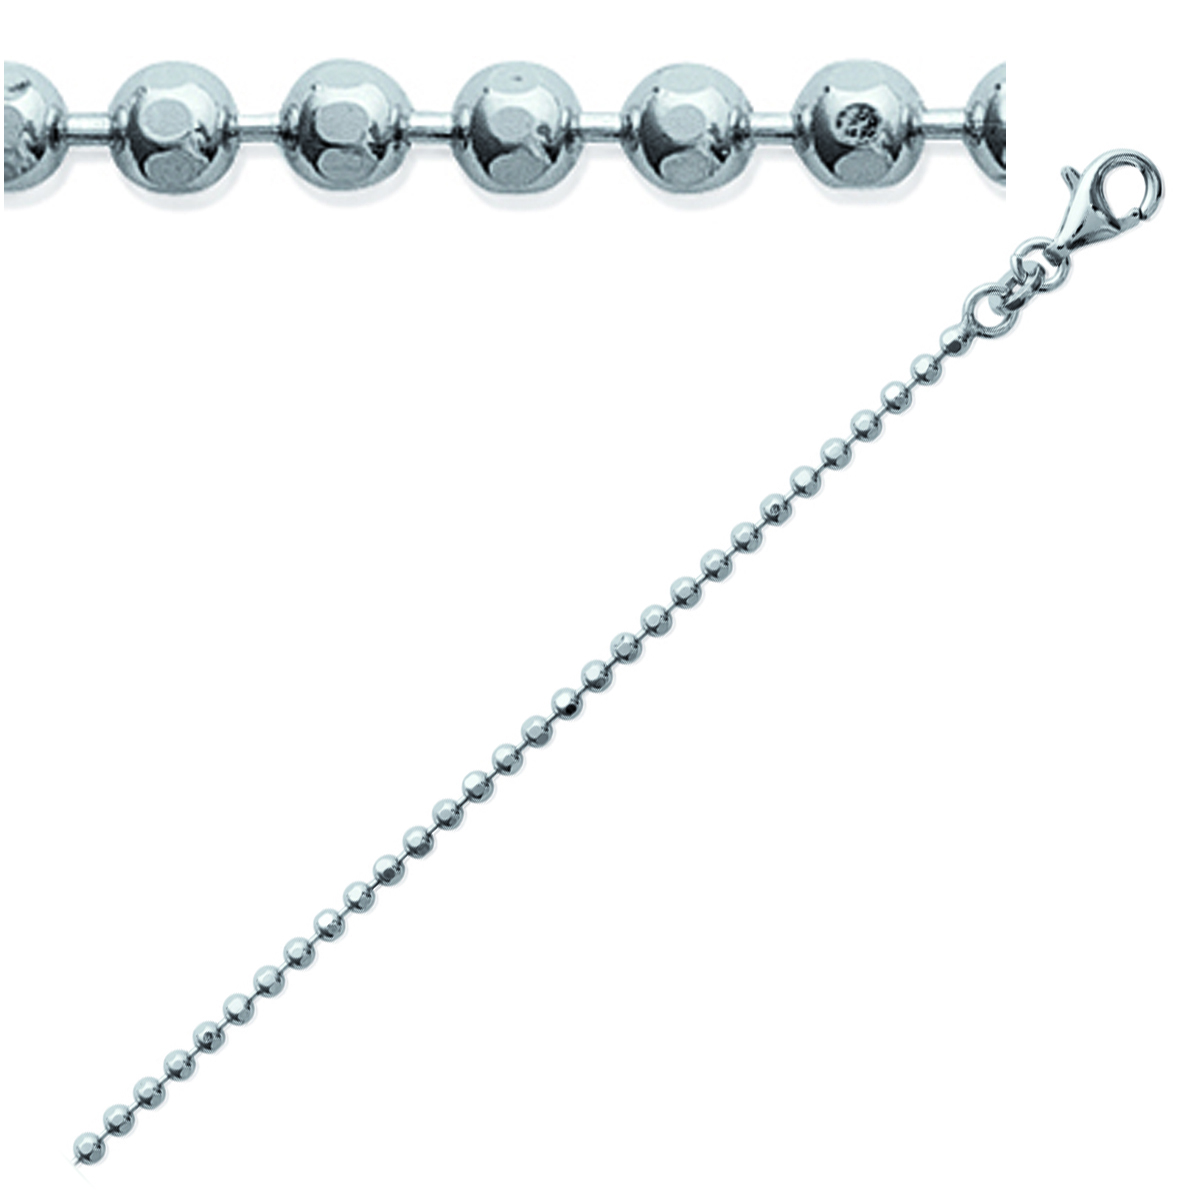 Chaine Argent \'Micro-Billes\' argenté (rhodié) - 40 cm 2 mm - [K3686]